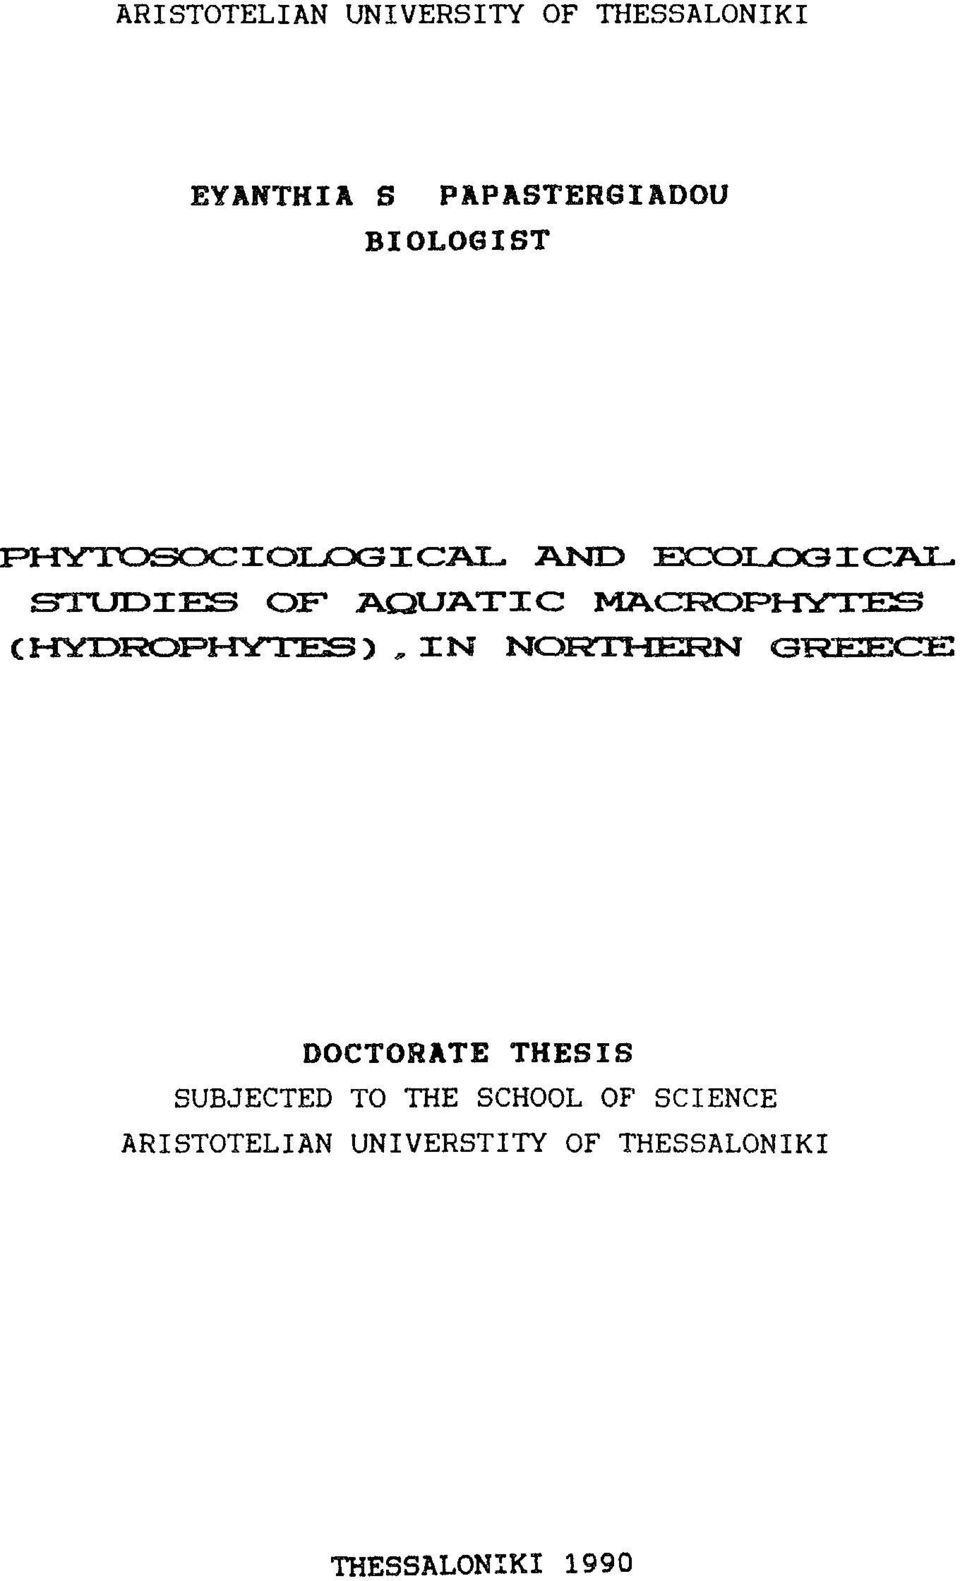 AND EXZOLJOGGAL STUDES OF AQUATC MACROPHYTES (HMDFÌOPHYTES), N